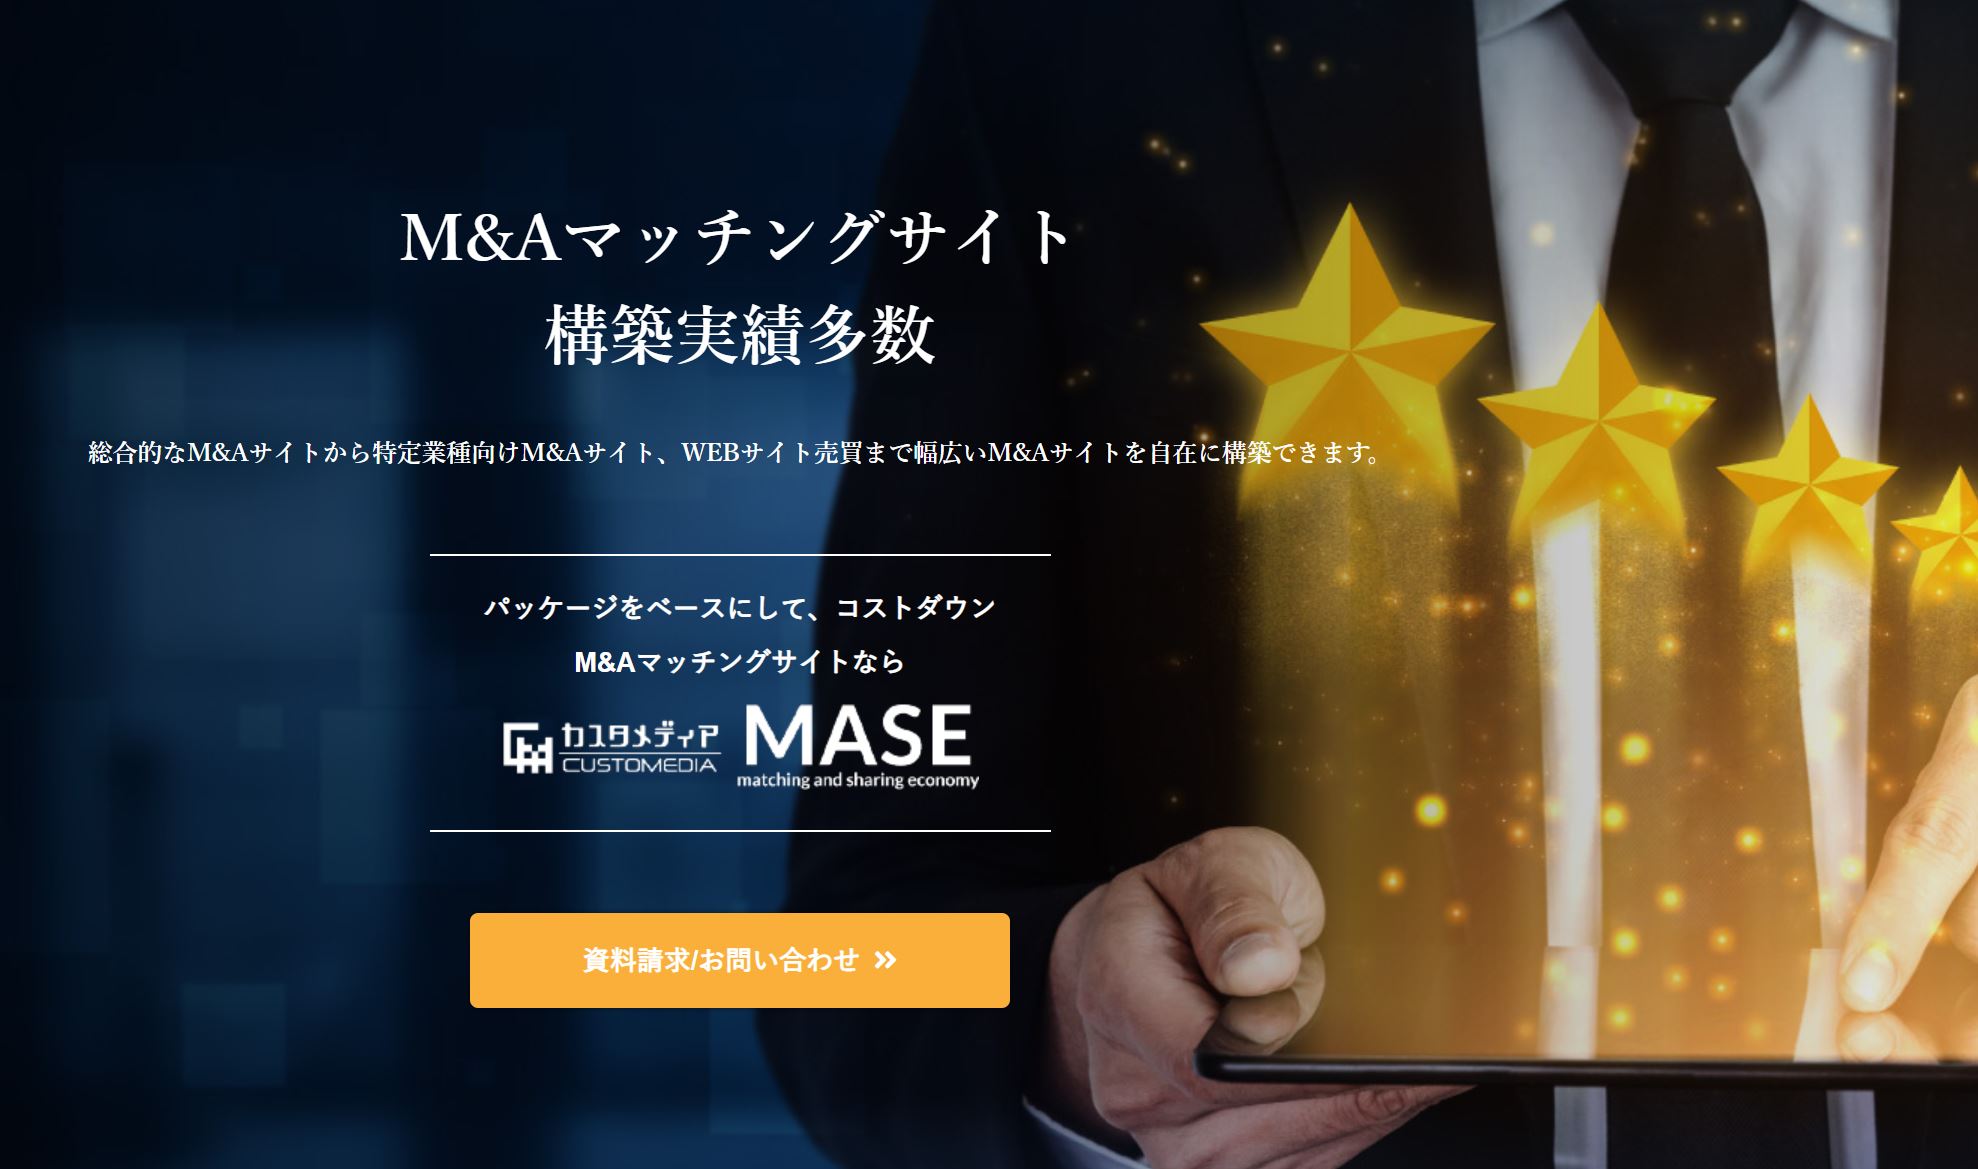 ＜独自のM&Aサイトを自在に構築＞総合型から業種特化型まで幅広く対応した「カスタメディアMASE M&Aマッチングサイト」をリリースしました！